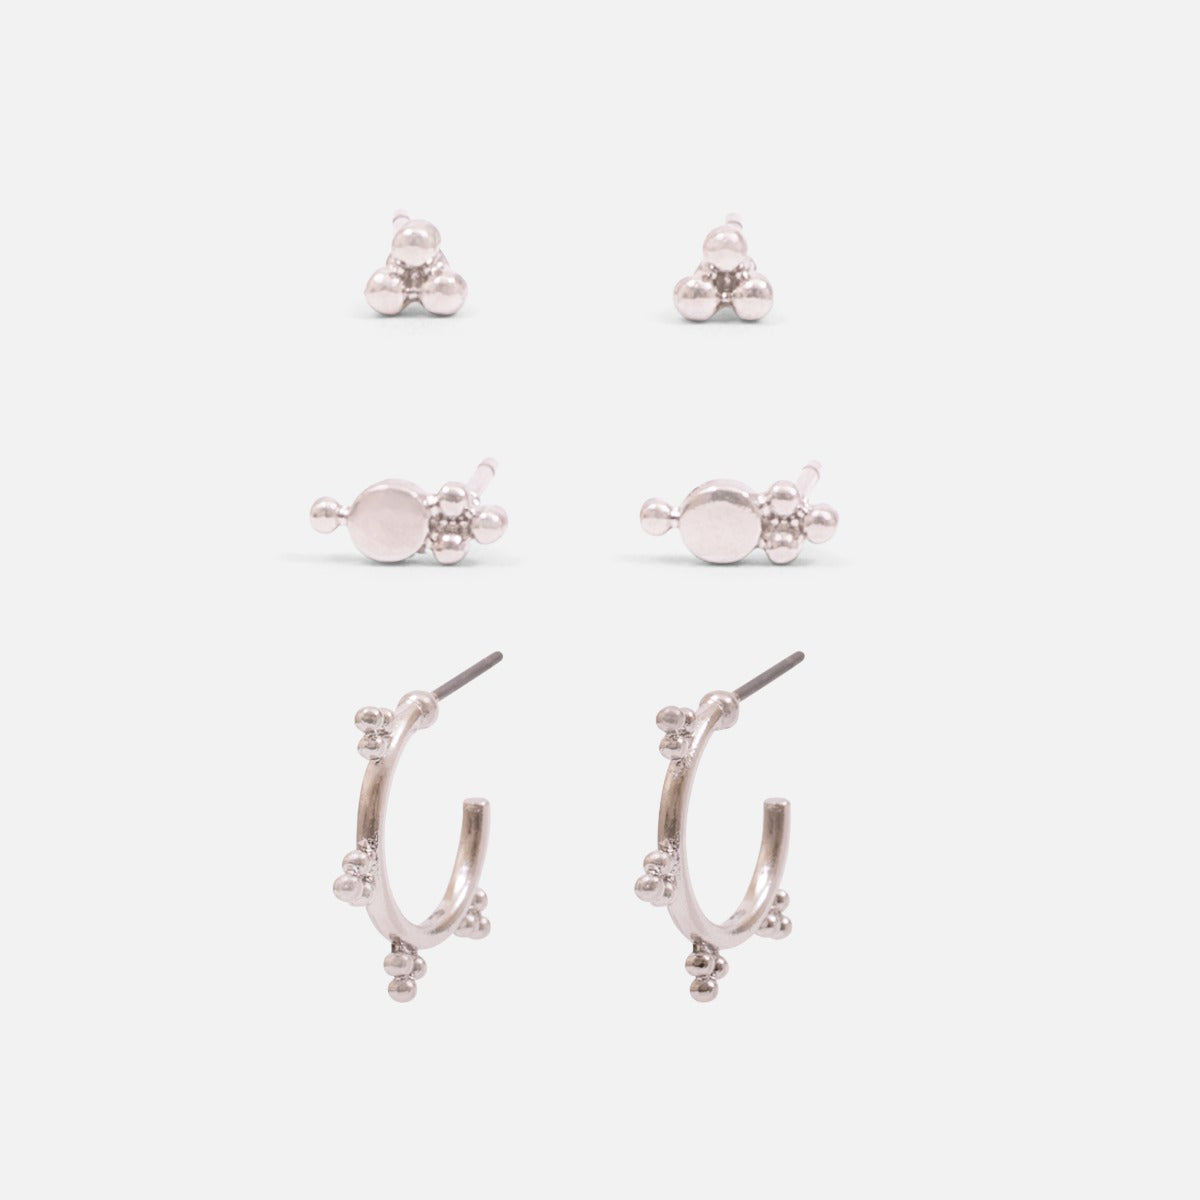 Trio de boucles d’oreilles argentées avec anneaux et billes